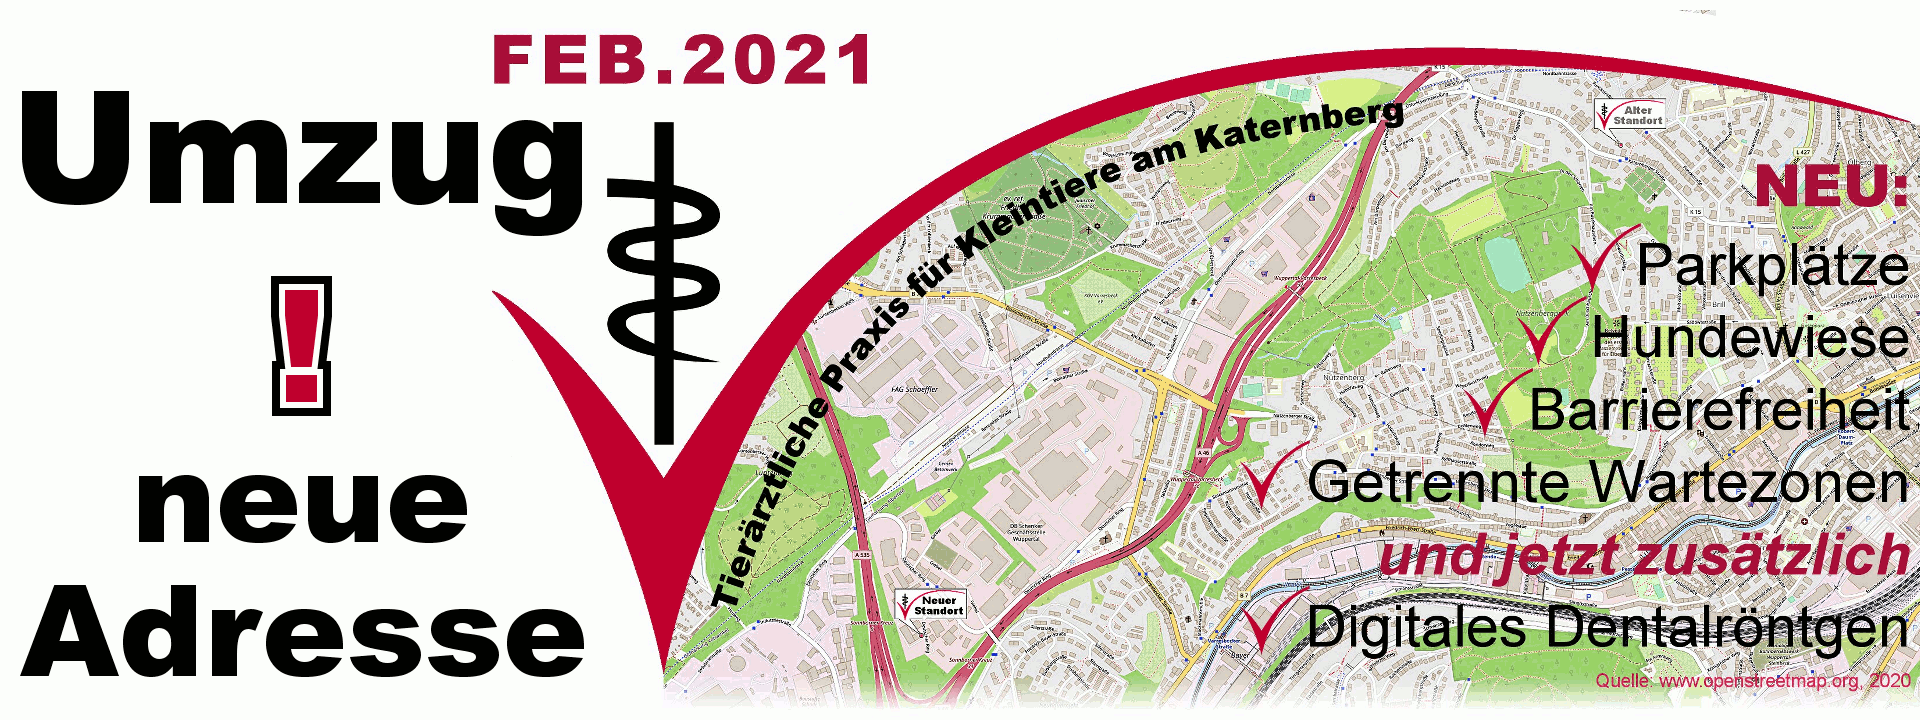 Tierarztpraxis am Katernberg: Deutscher Ring 71, 42327 Wuppertal